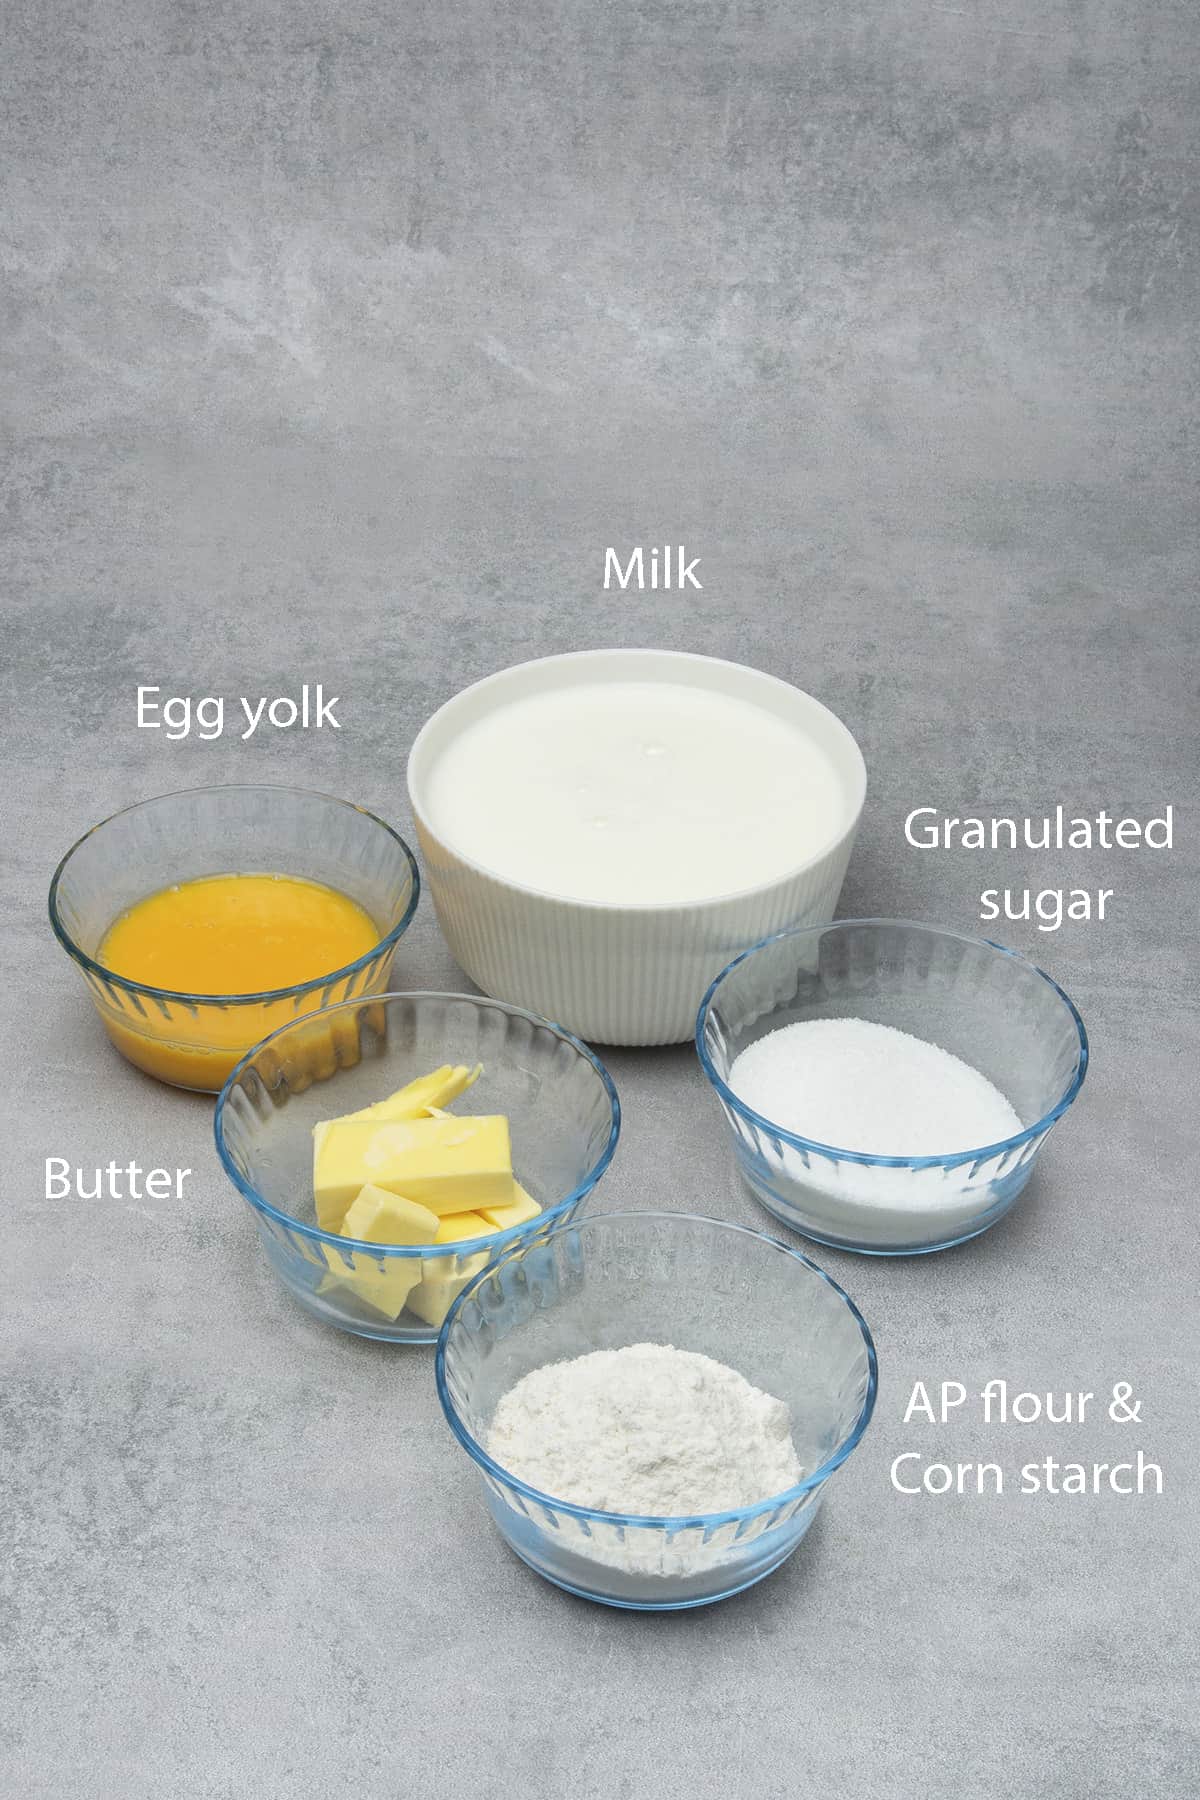 Pastry cream ingredients